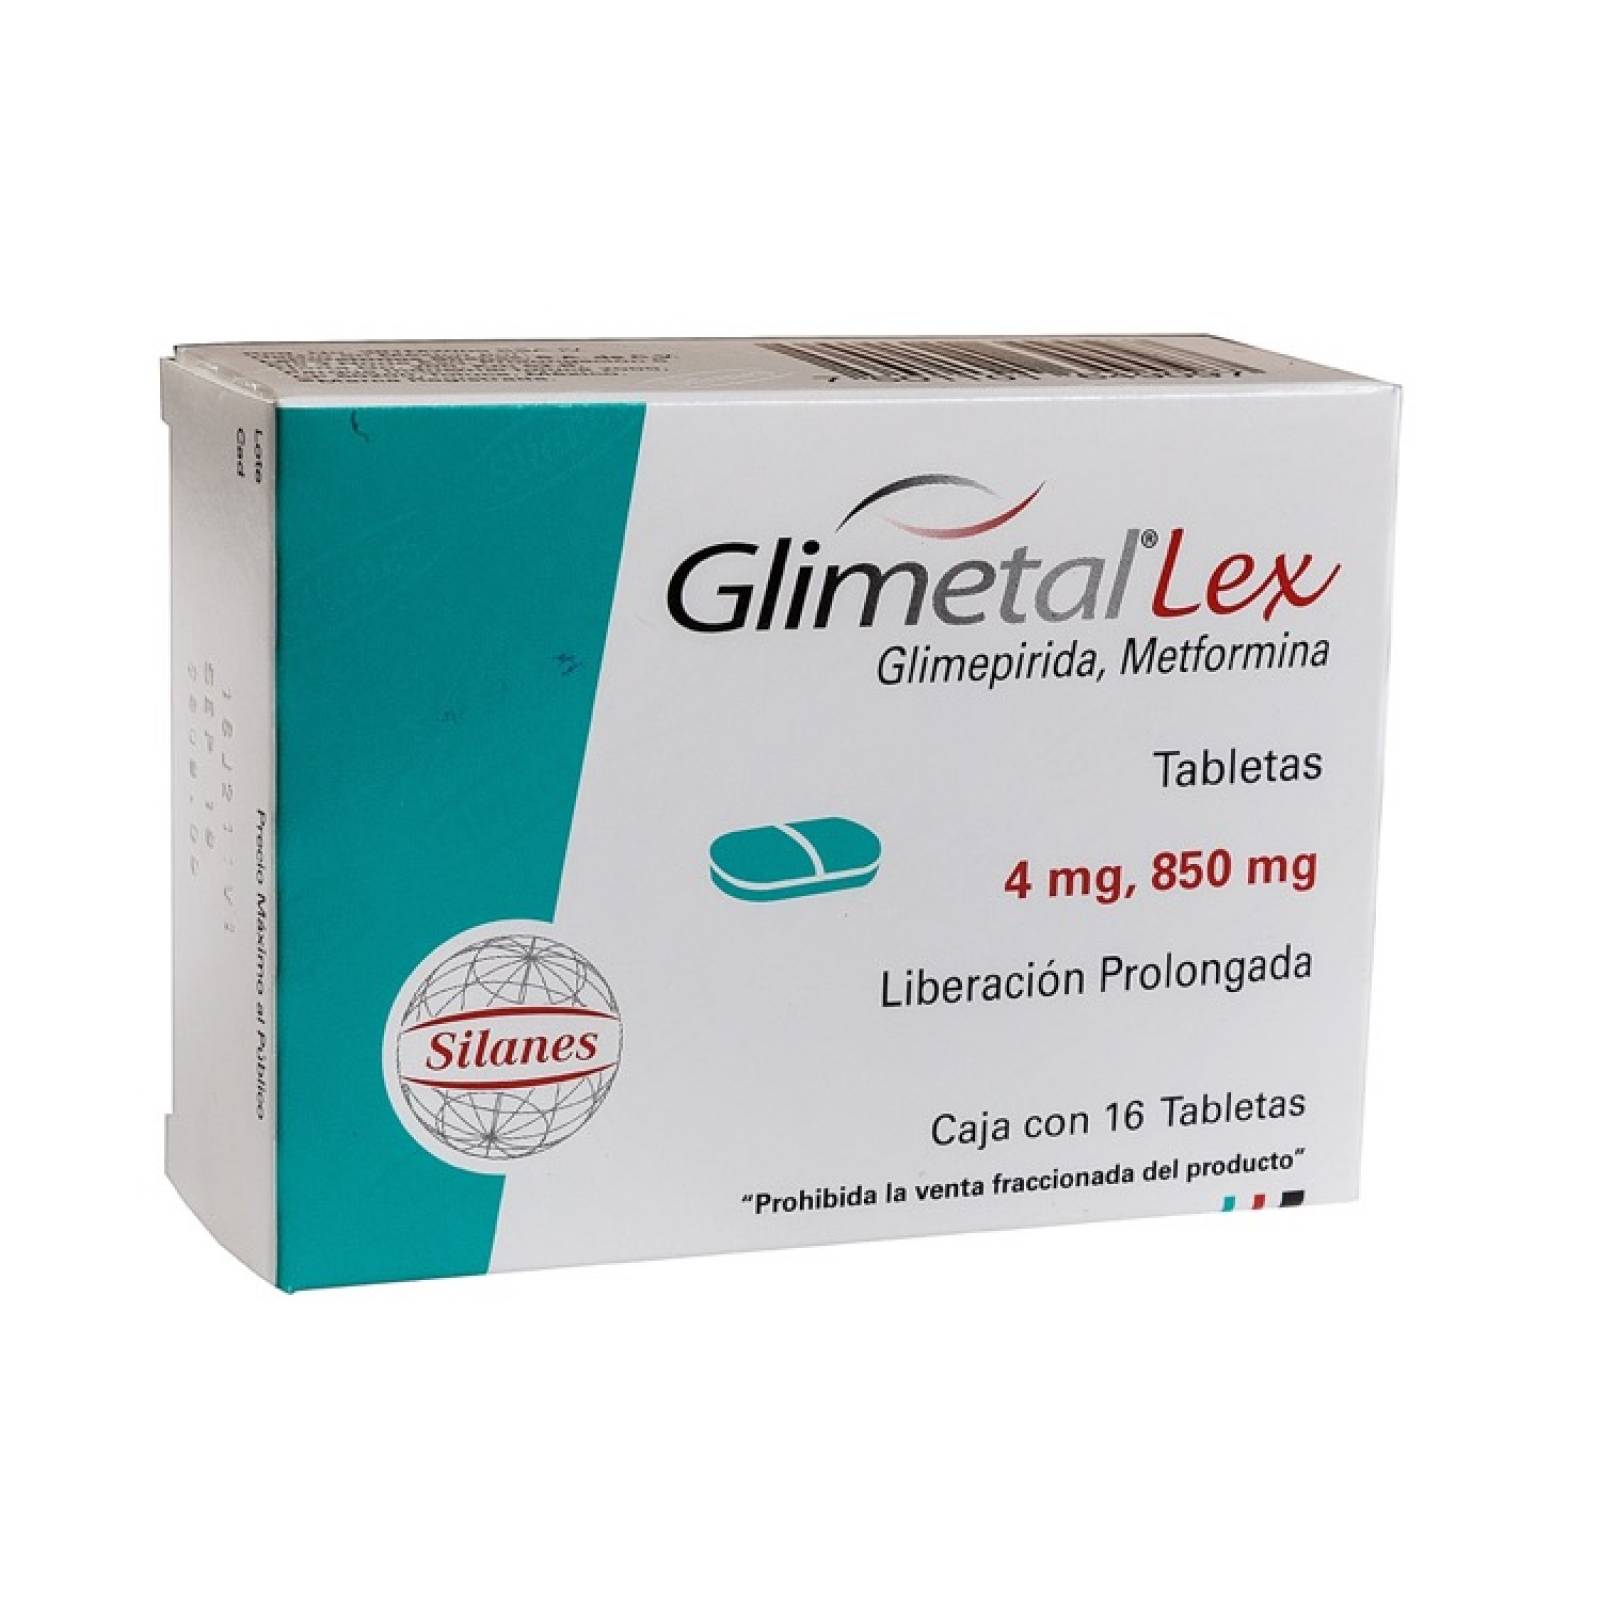 Glimetal Lex 4/850 Mg Caja 16 Tabletas